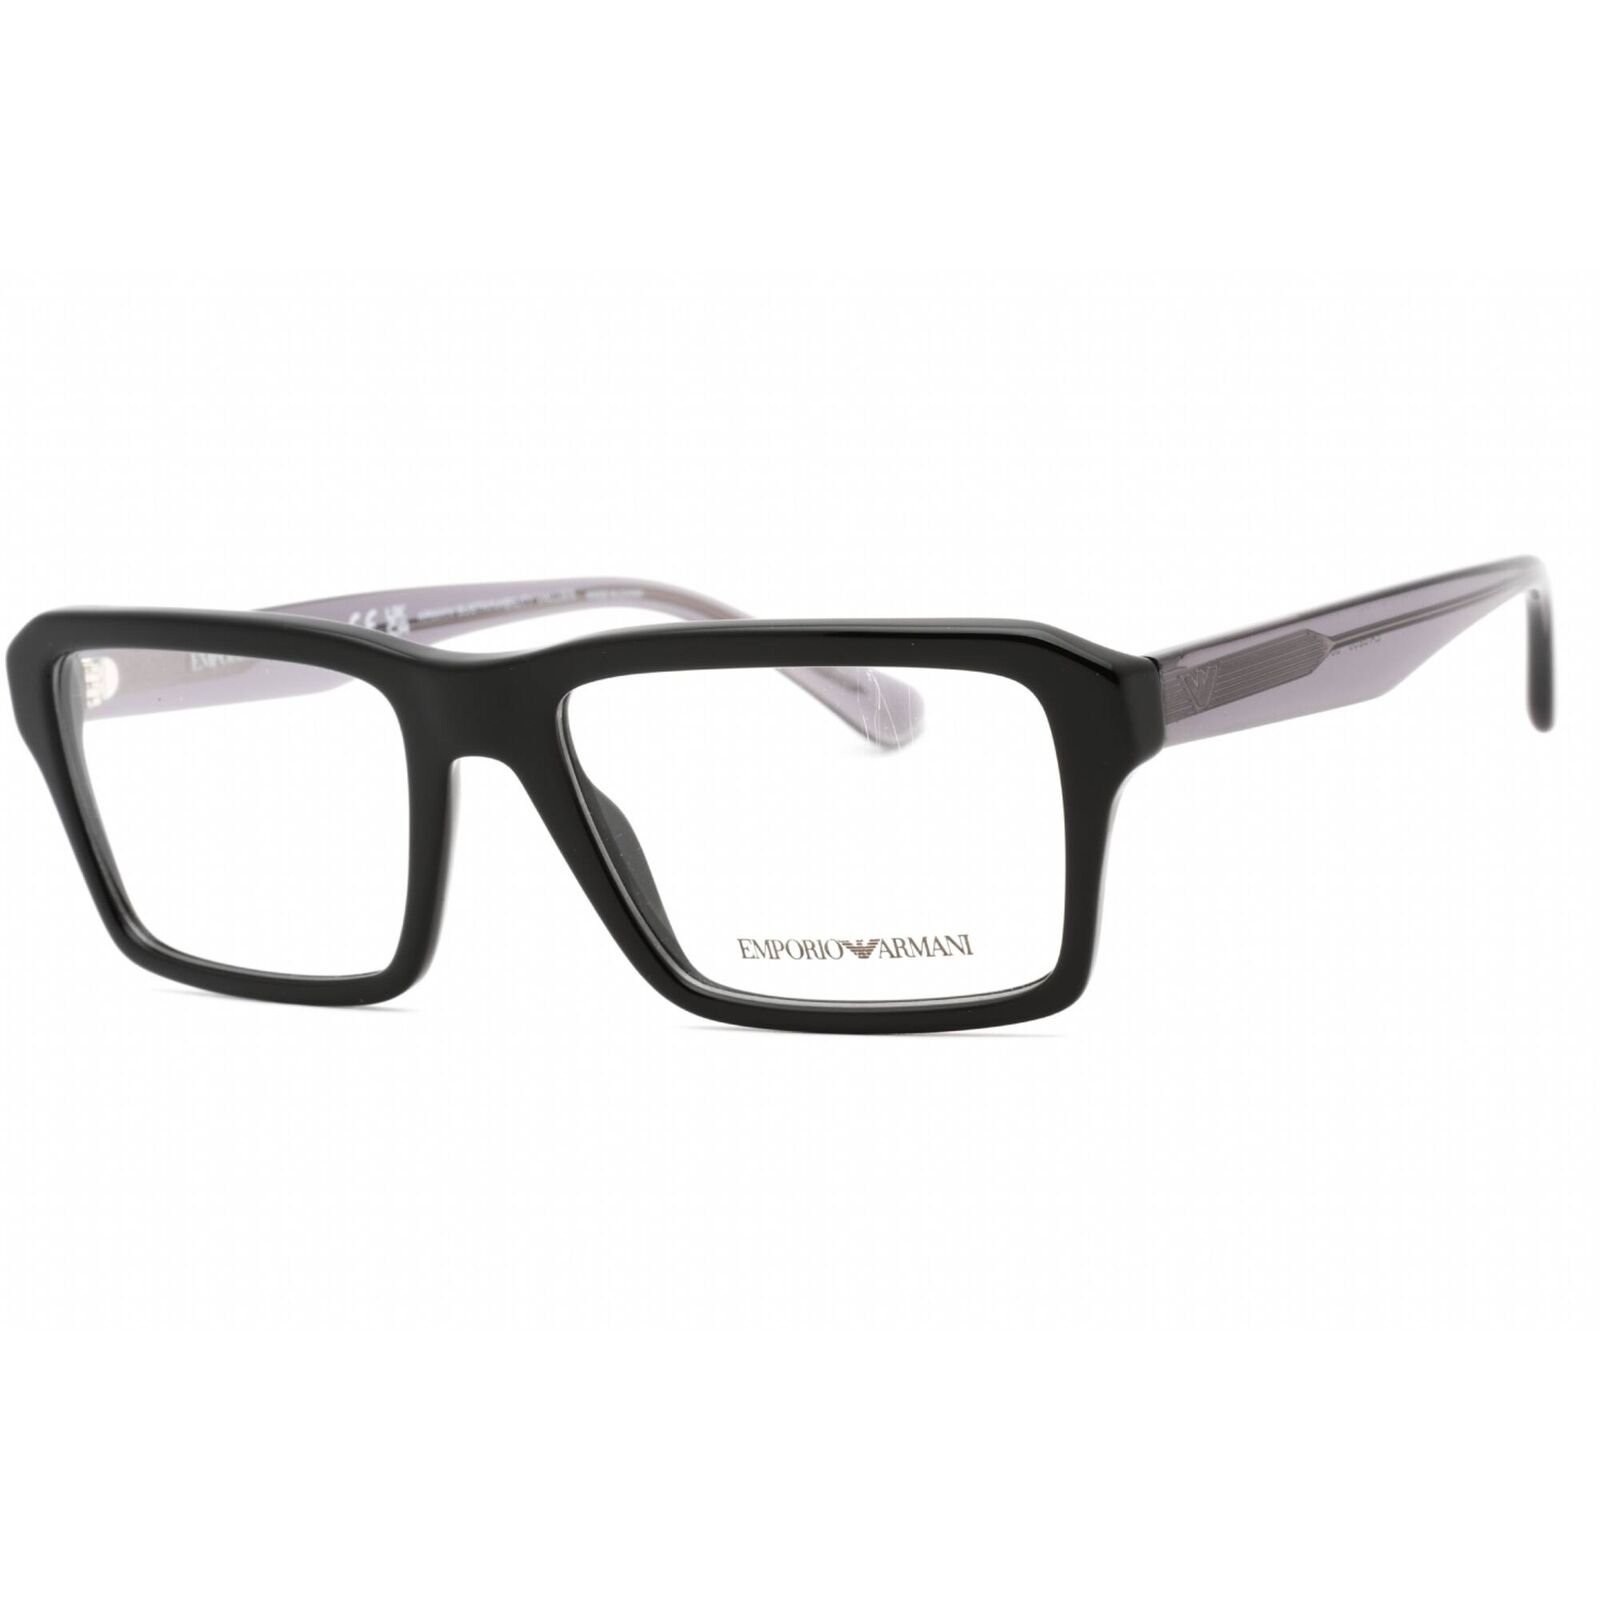 Emporio Armani Men's Eyeglasses Shiny Black Plastic Full Rim Frame 0EA3206 5017 Emporio Armani 0EA3206 5017